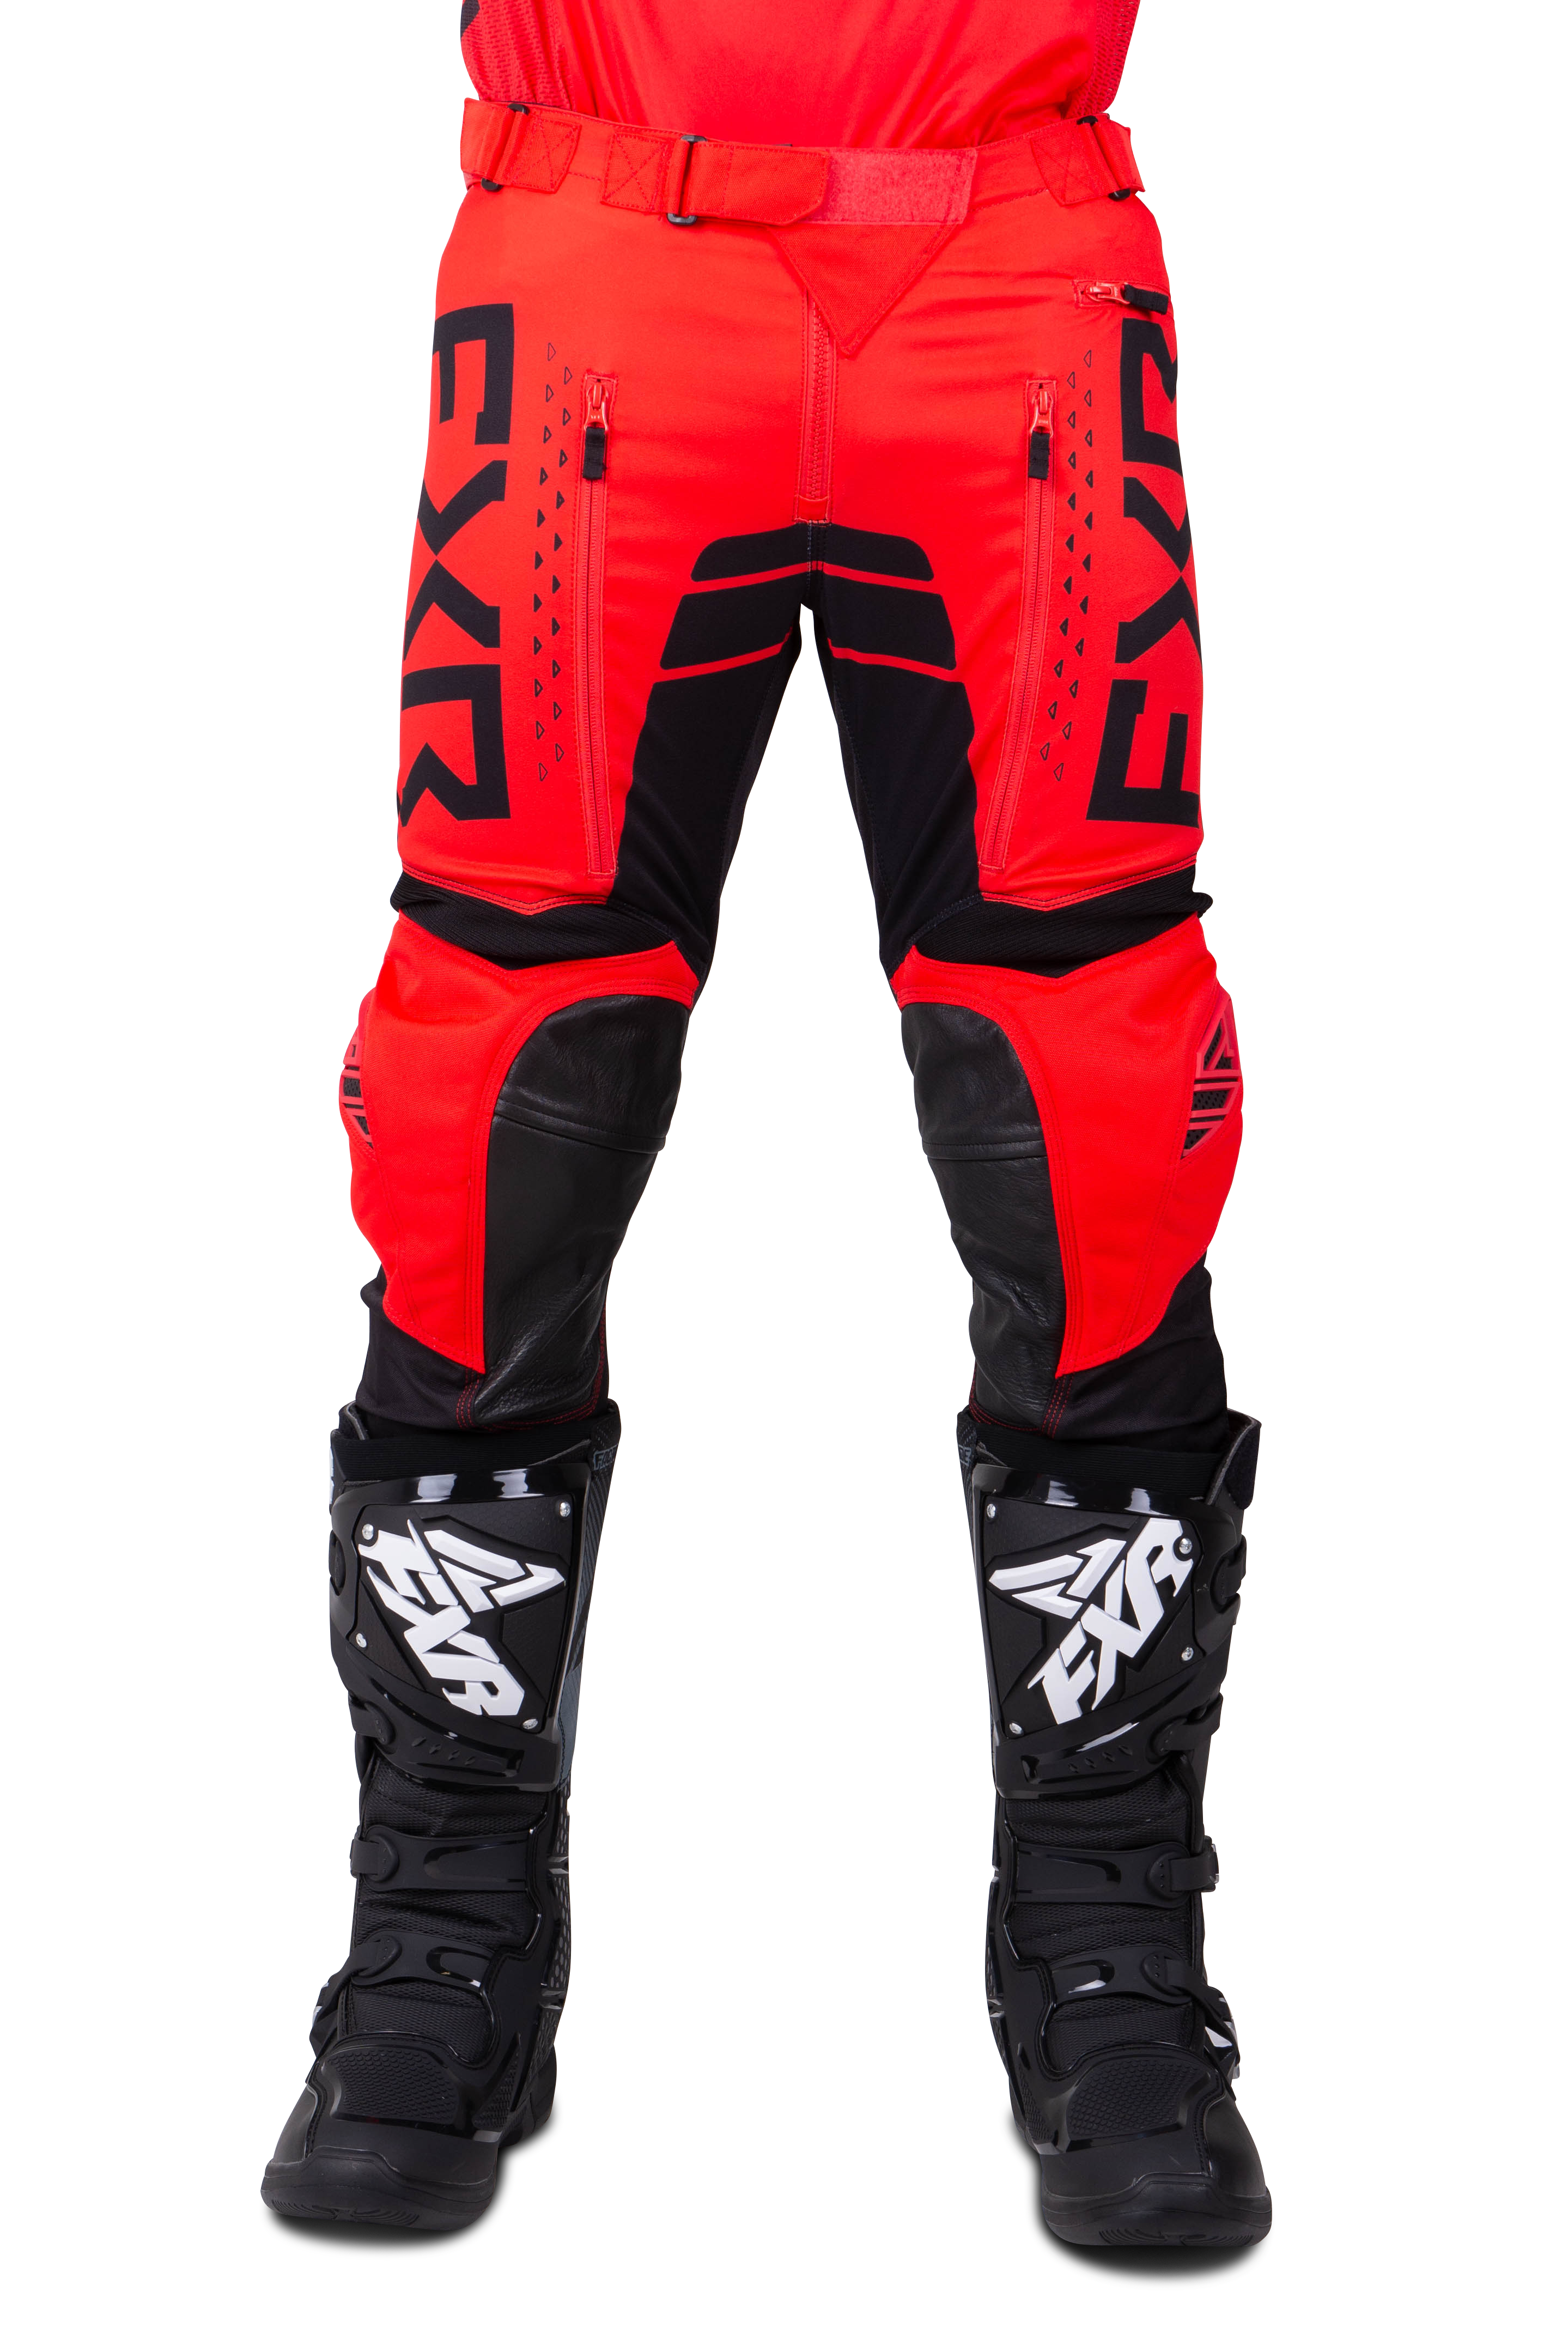 FXR Pantalones de Cross  Contender Rojo-Negro